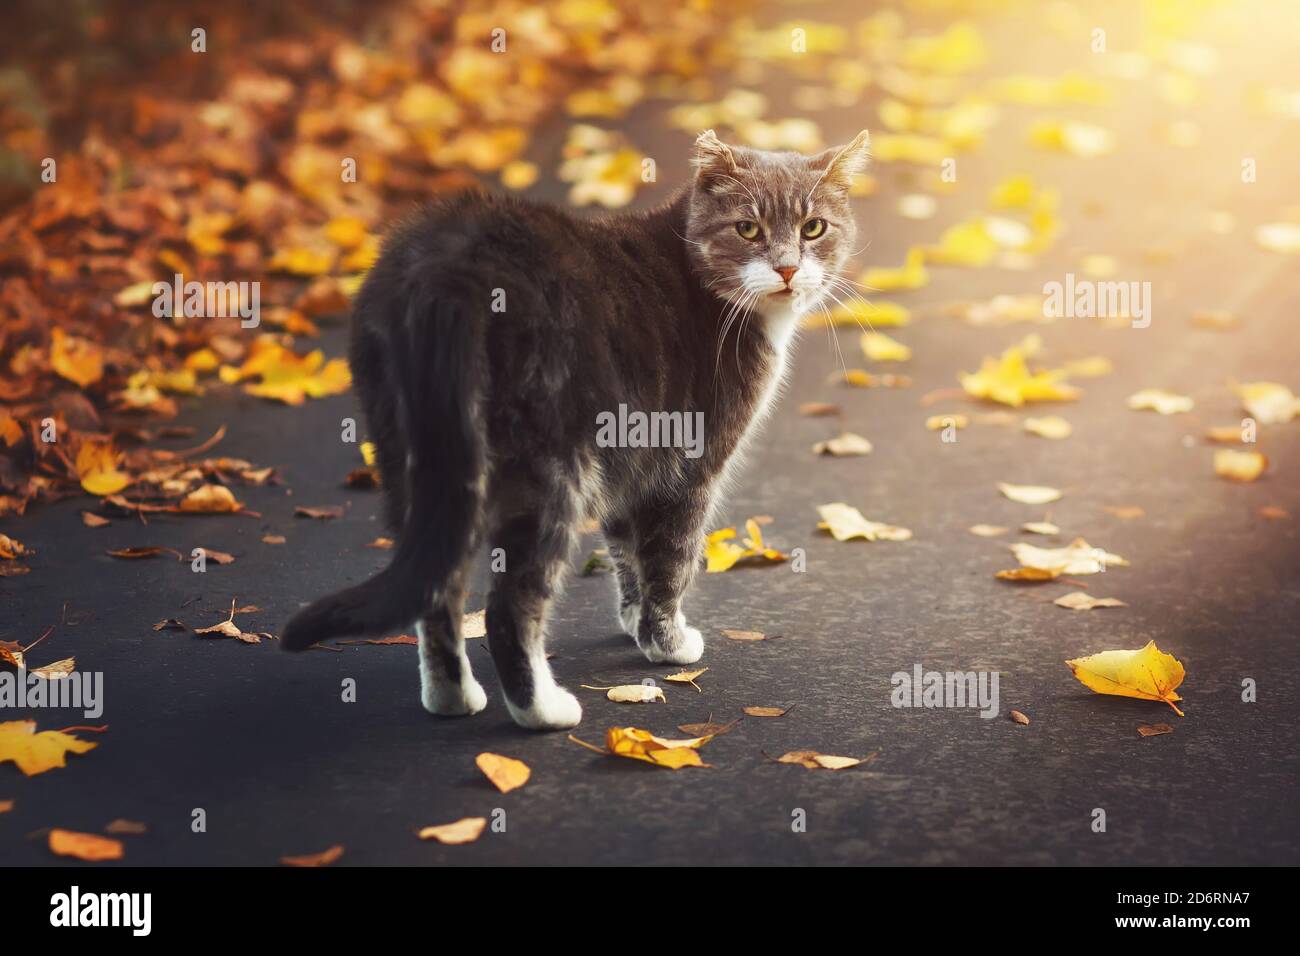 Un gato gris callejero camina en un soleado día de otoño a lo largo de la  carretera entre las hojas secas caídas y mira a su alrededor en sorpresa  Fotografía de stock -